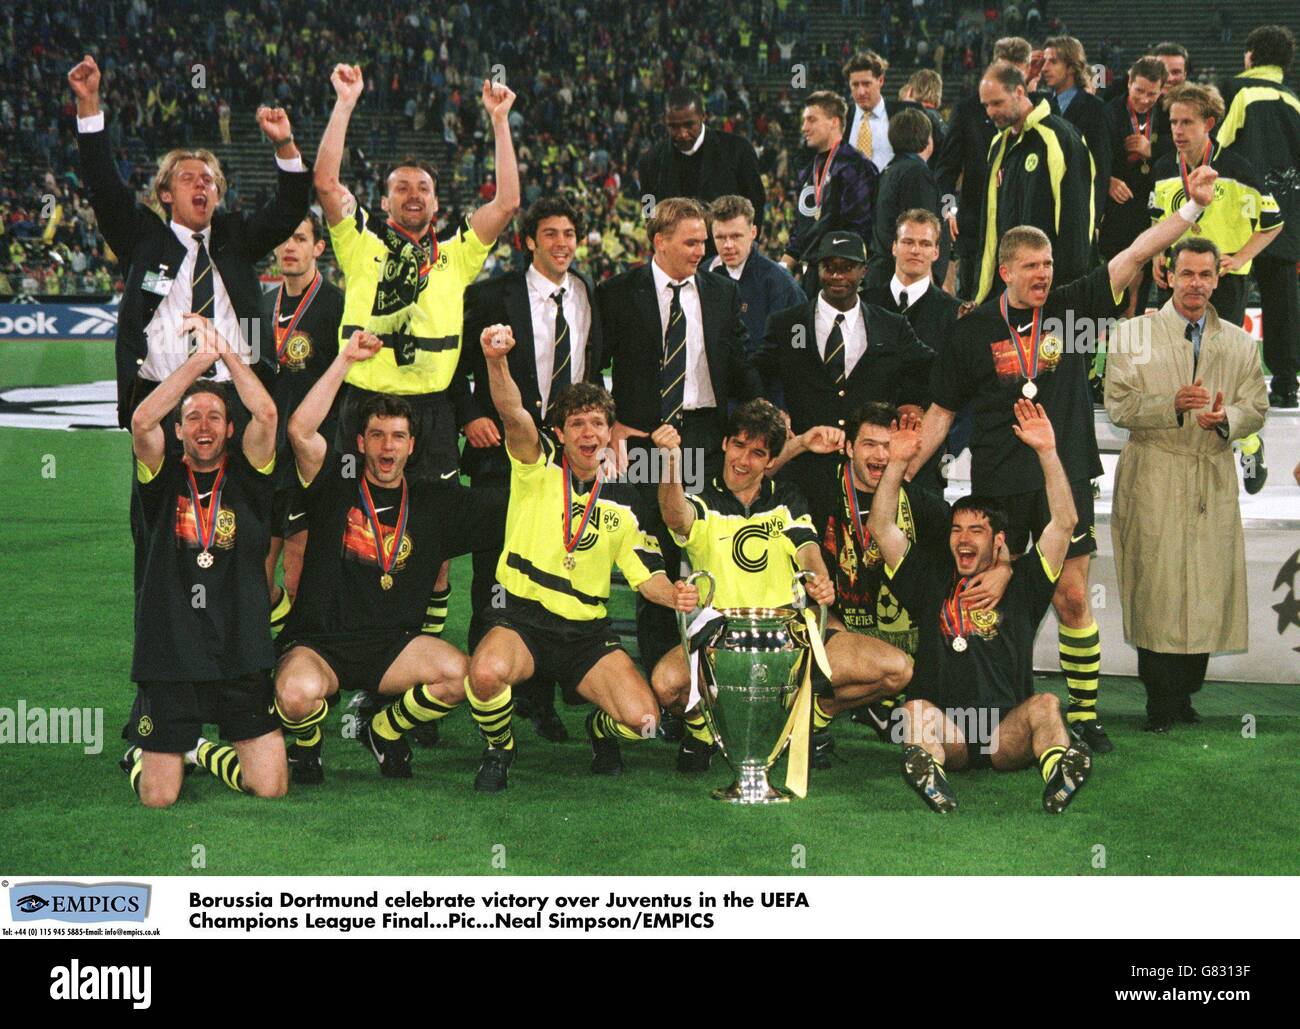 Borussia Dortmund fêtez avec la coupe de la Ligue des champions de l'UEFA. Parmi les joueurs figurent Paul Lambert, Michael Zorc, Andreas Moller et Karl-Heinz Riedle (derrière le trophée). Banque D'Images